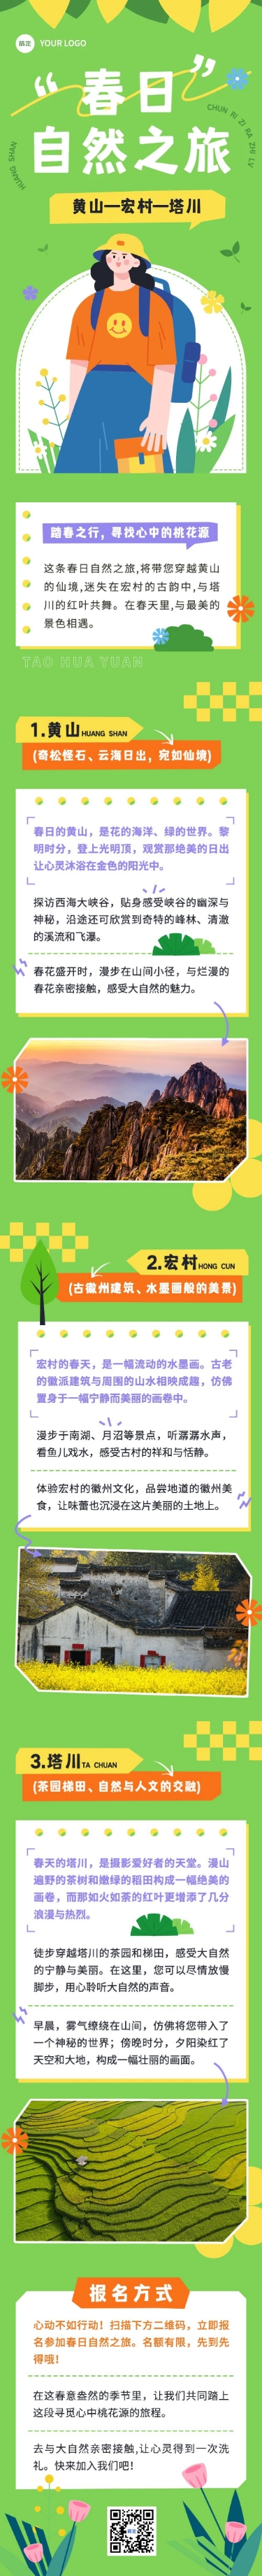 春游旅游路线宣传微信公众号长图预览效果